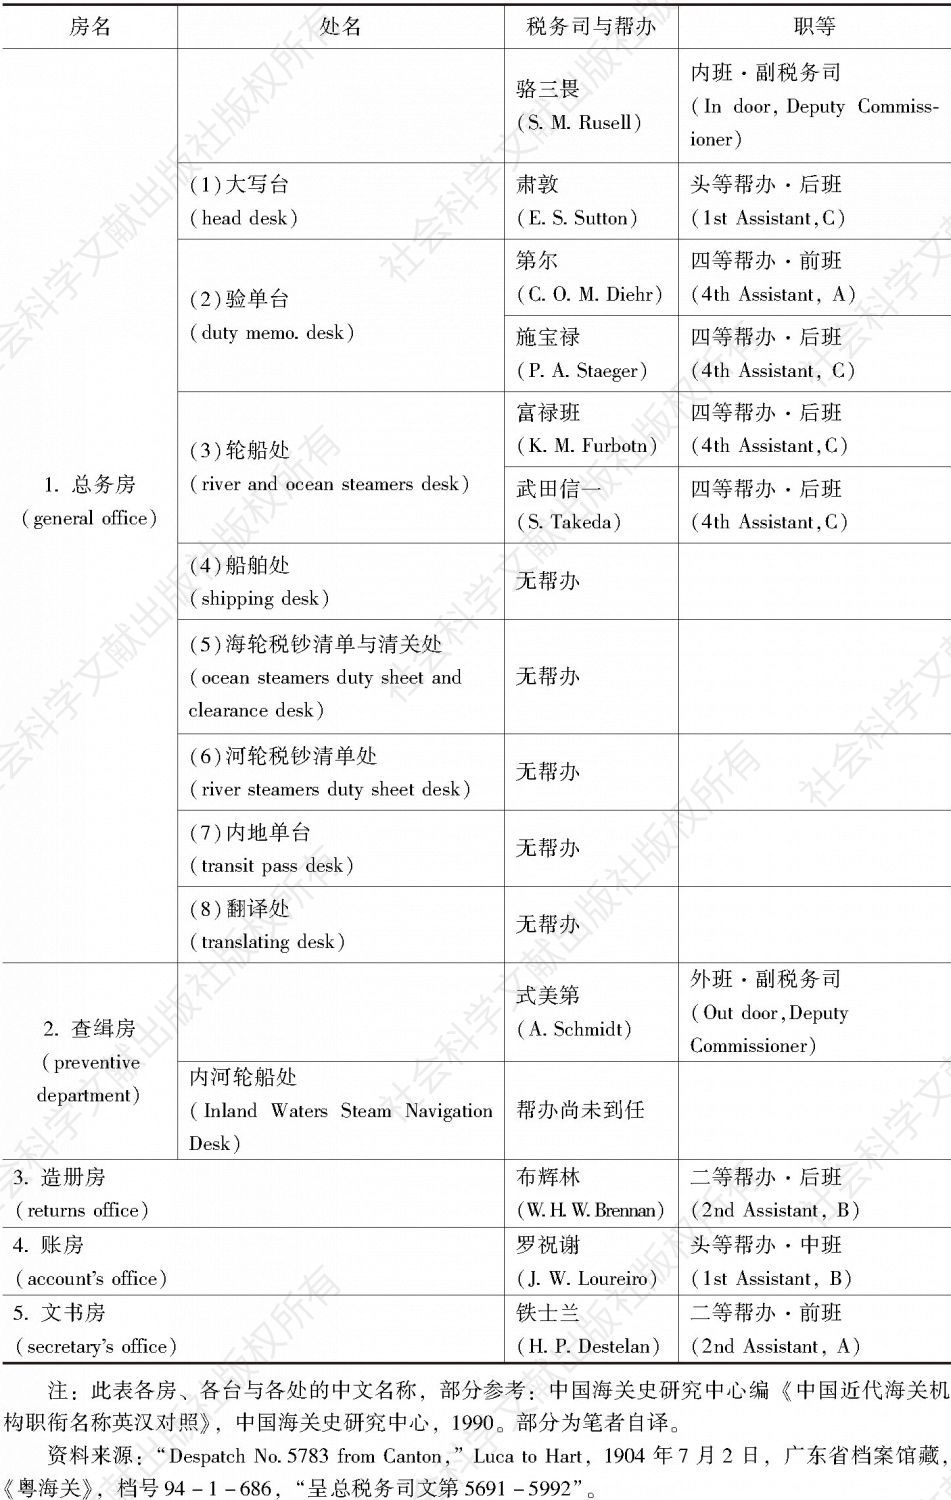 表2 粤海关组织架构及人员配置（截至1904年7月2日）